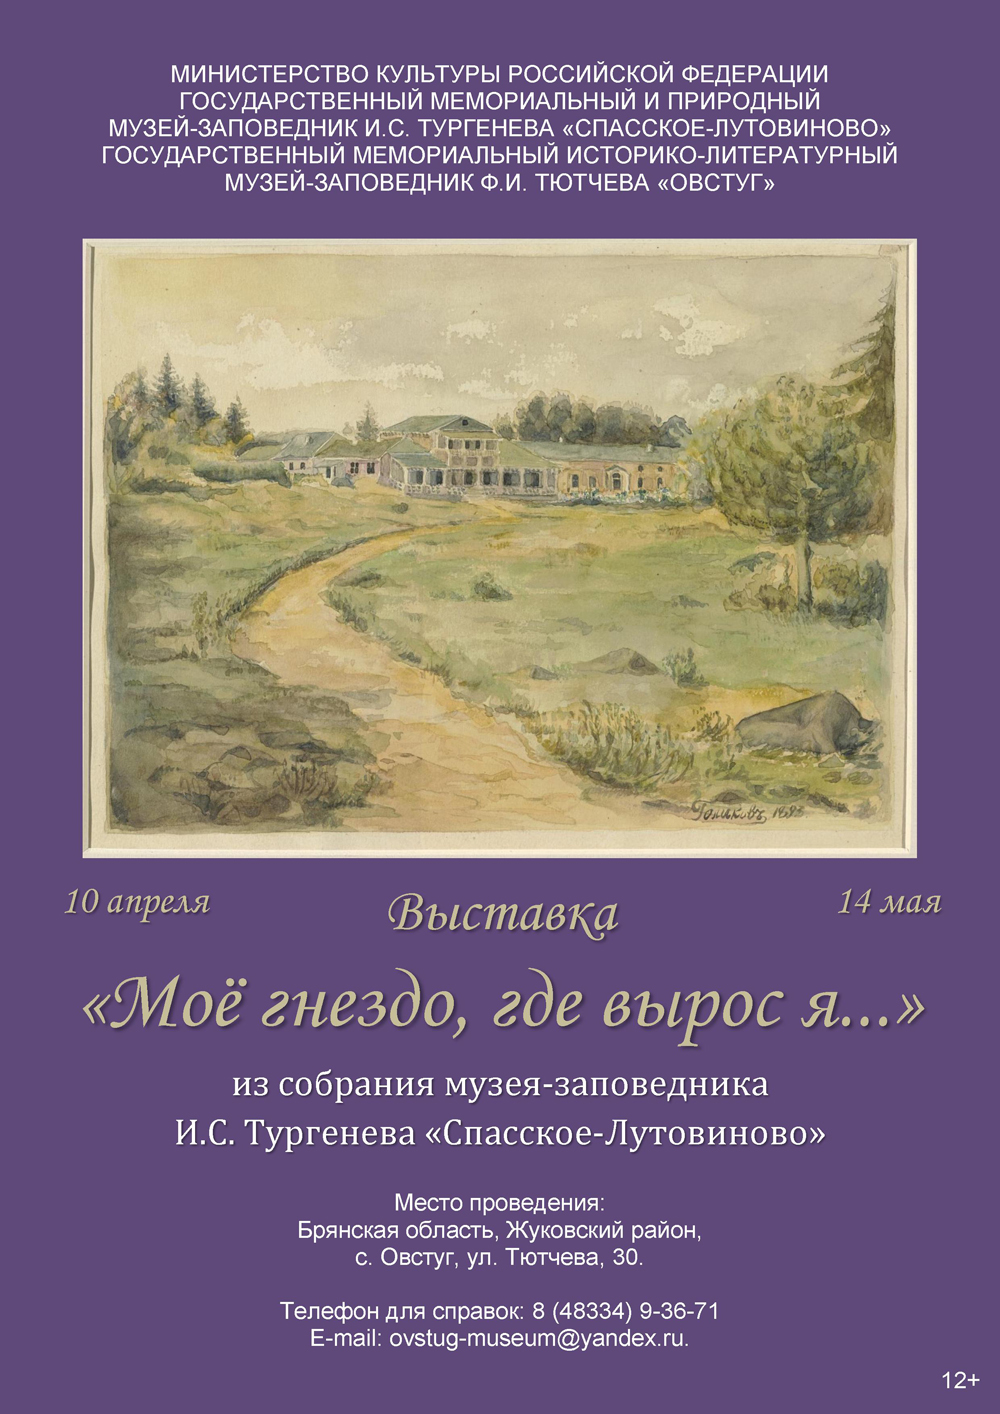 Жителей Брянщины приглашают посетить выставку, посвящённую И.С. Тургеневу